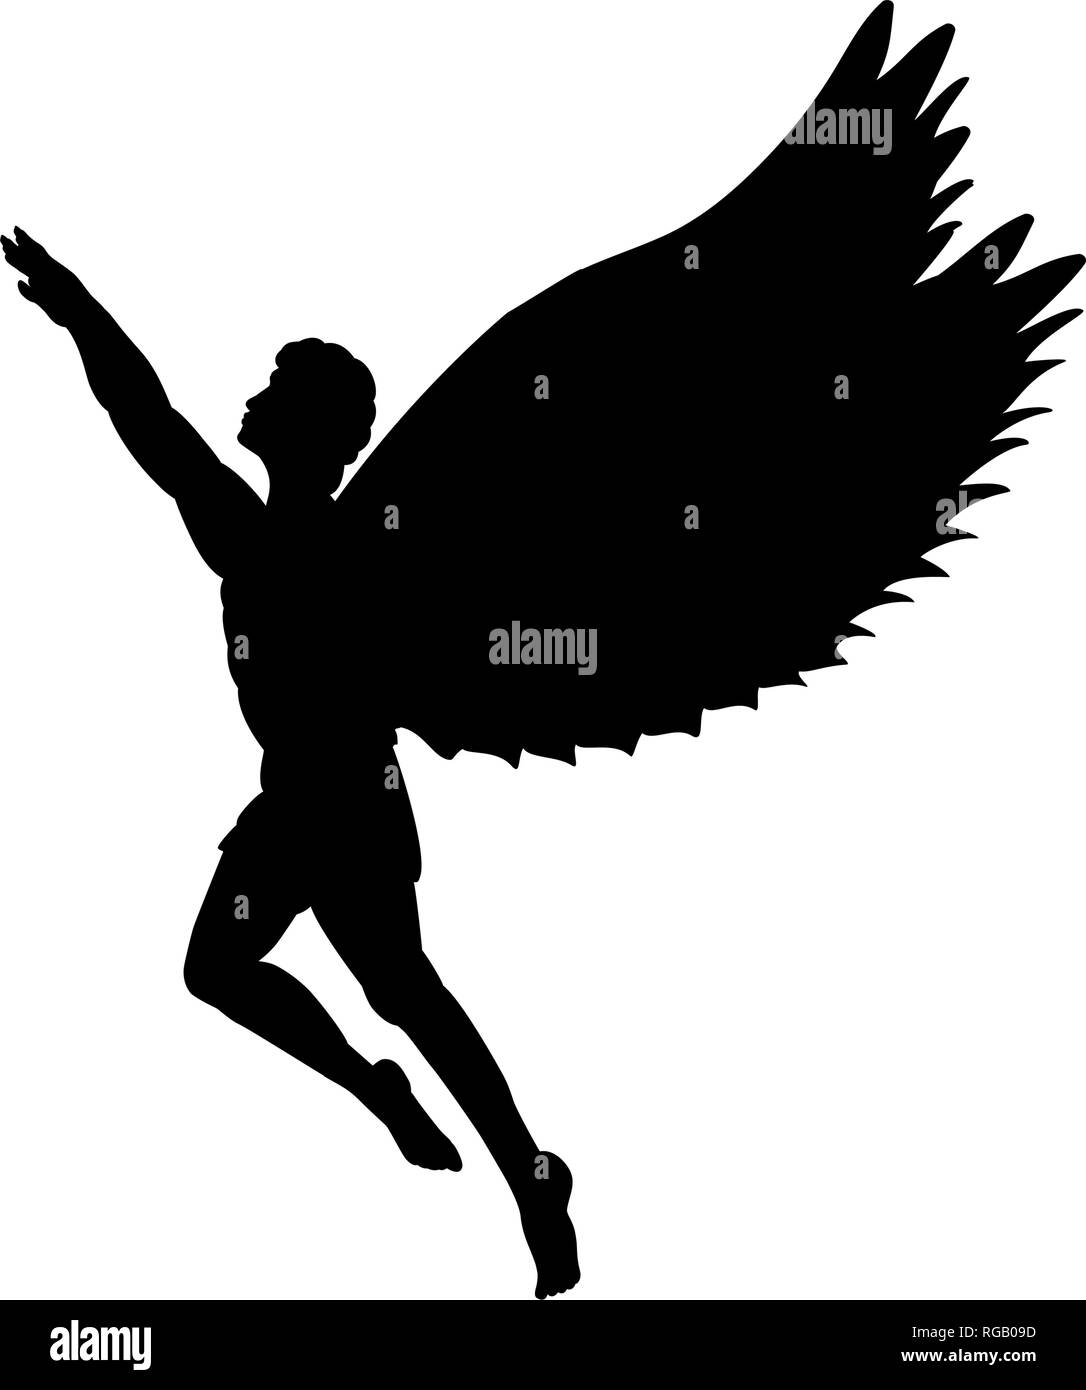 Homme volant Icarus silhouette symbole mythologie conte fantastique Illustration de Vecteur